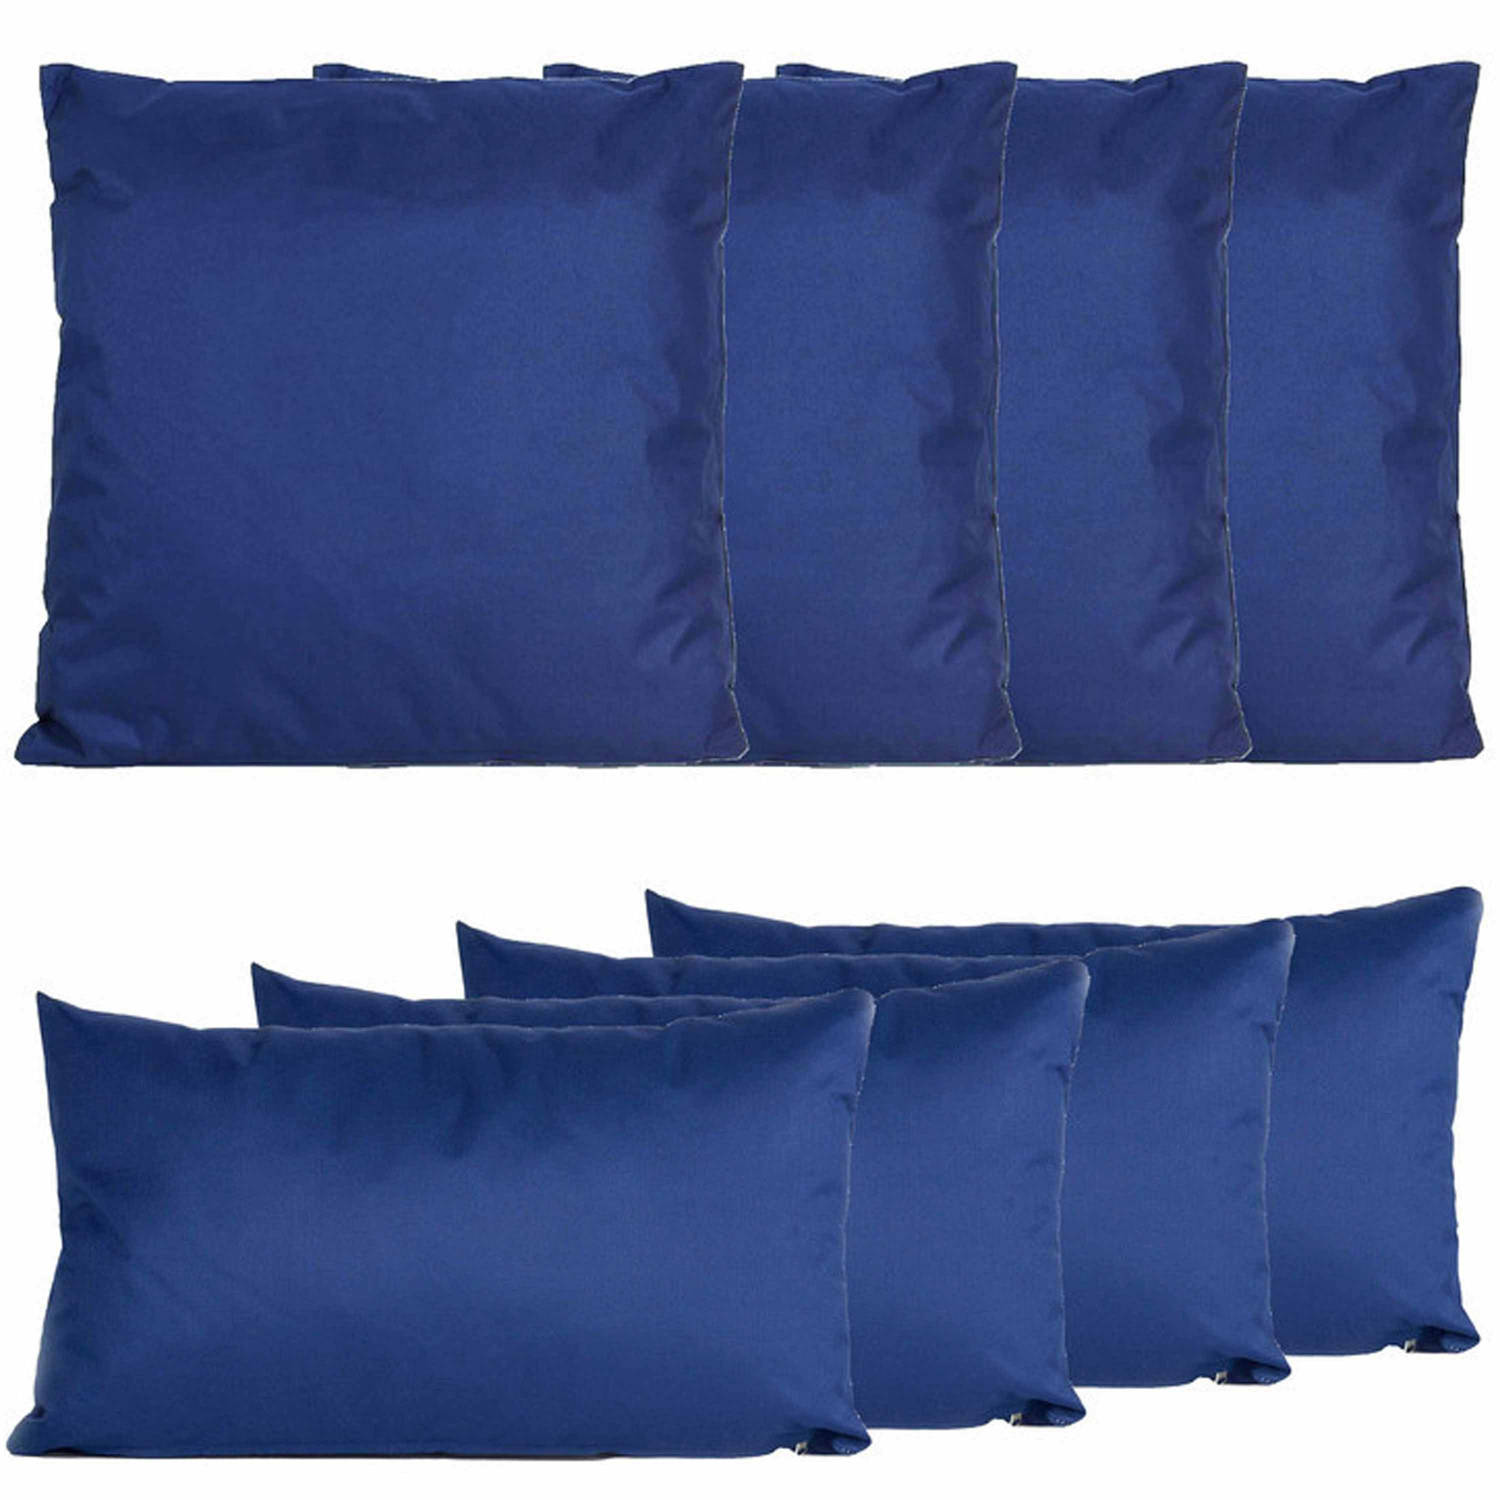 Bank-tuin kussens set binnen-buiten 8x stuks donkerblauw In 2 formaten laag-hoog Sierkussens